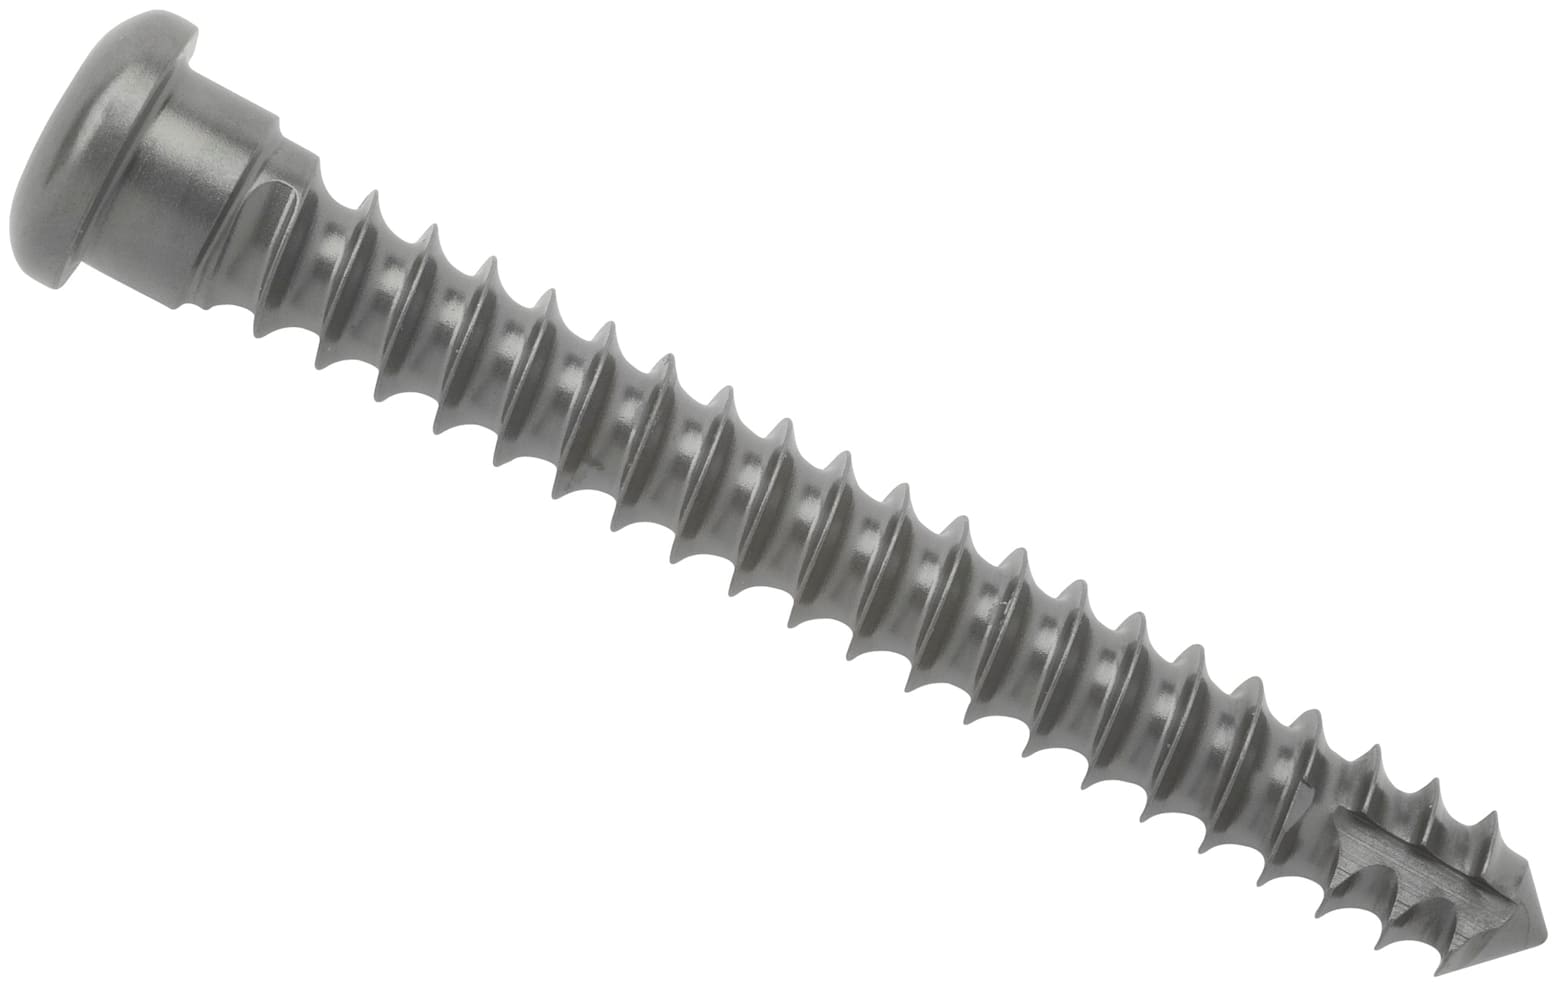 Cortical Screw, 3.5 mm x 26 mm